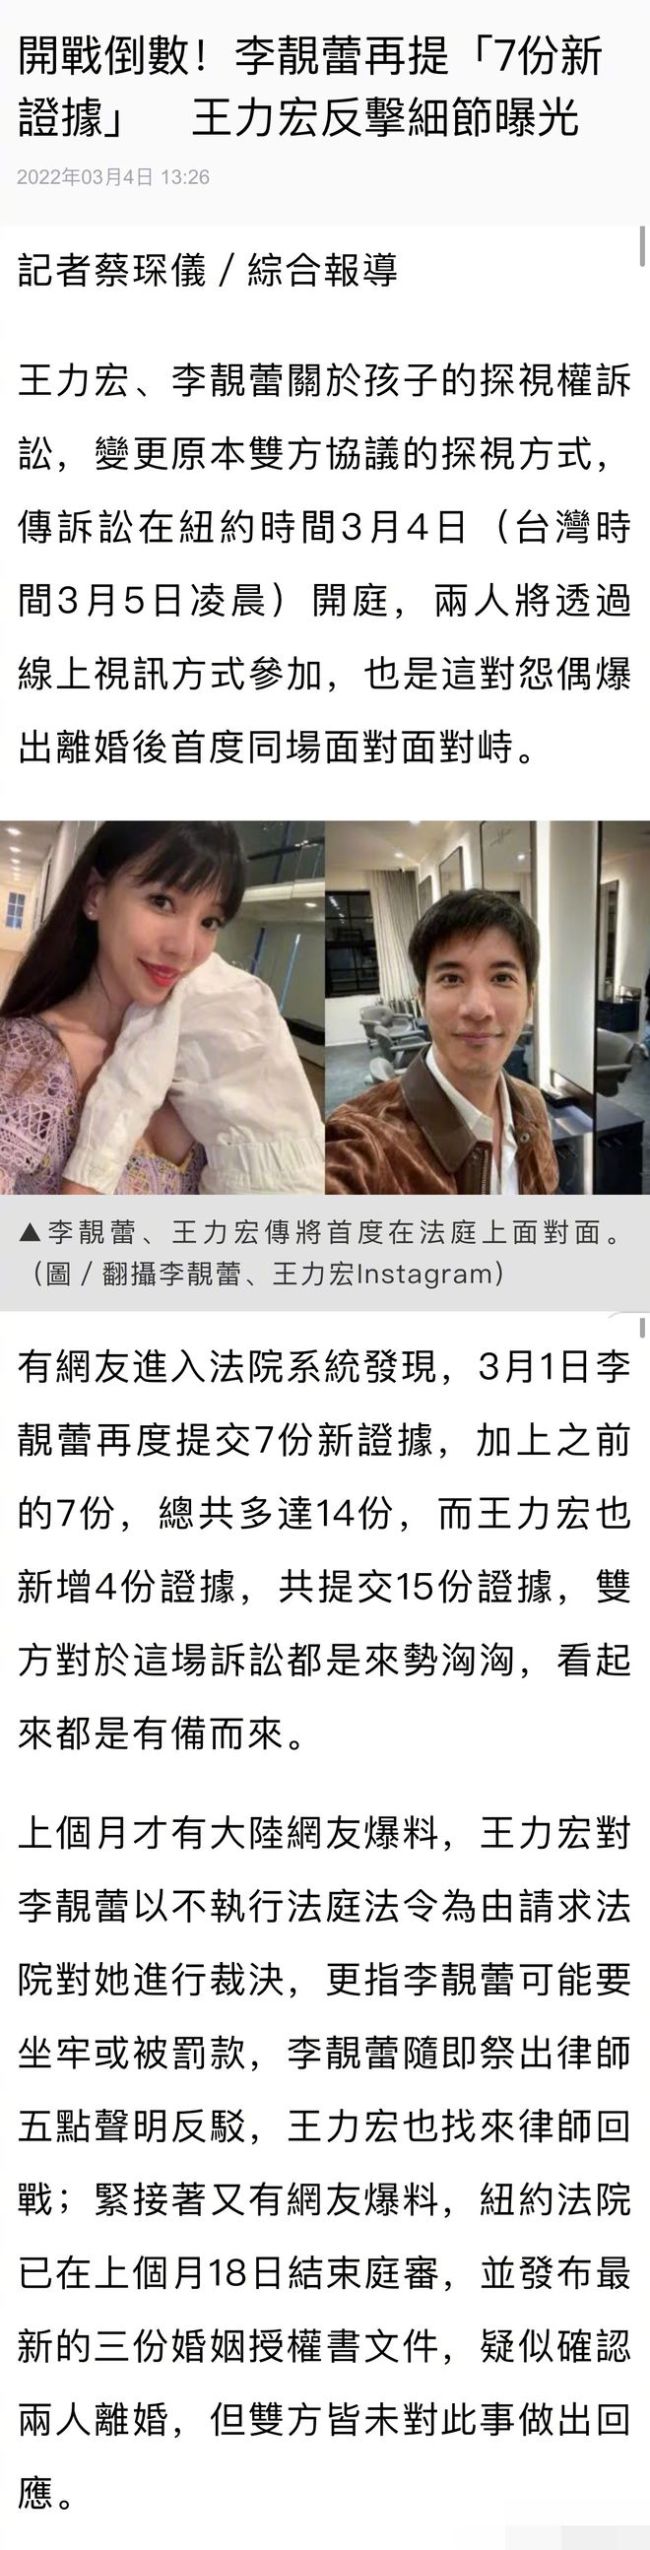 王力宏离婚官司明日开庭 李靓蕾新增7项证据对决